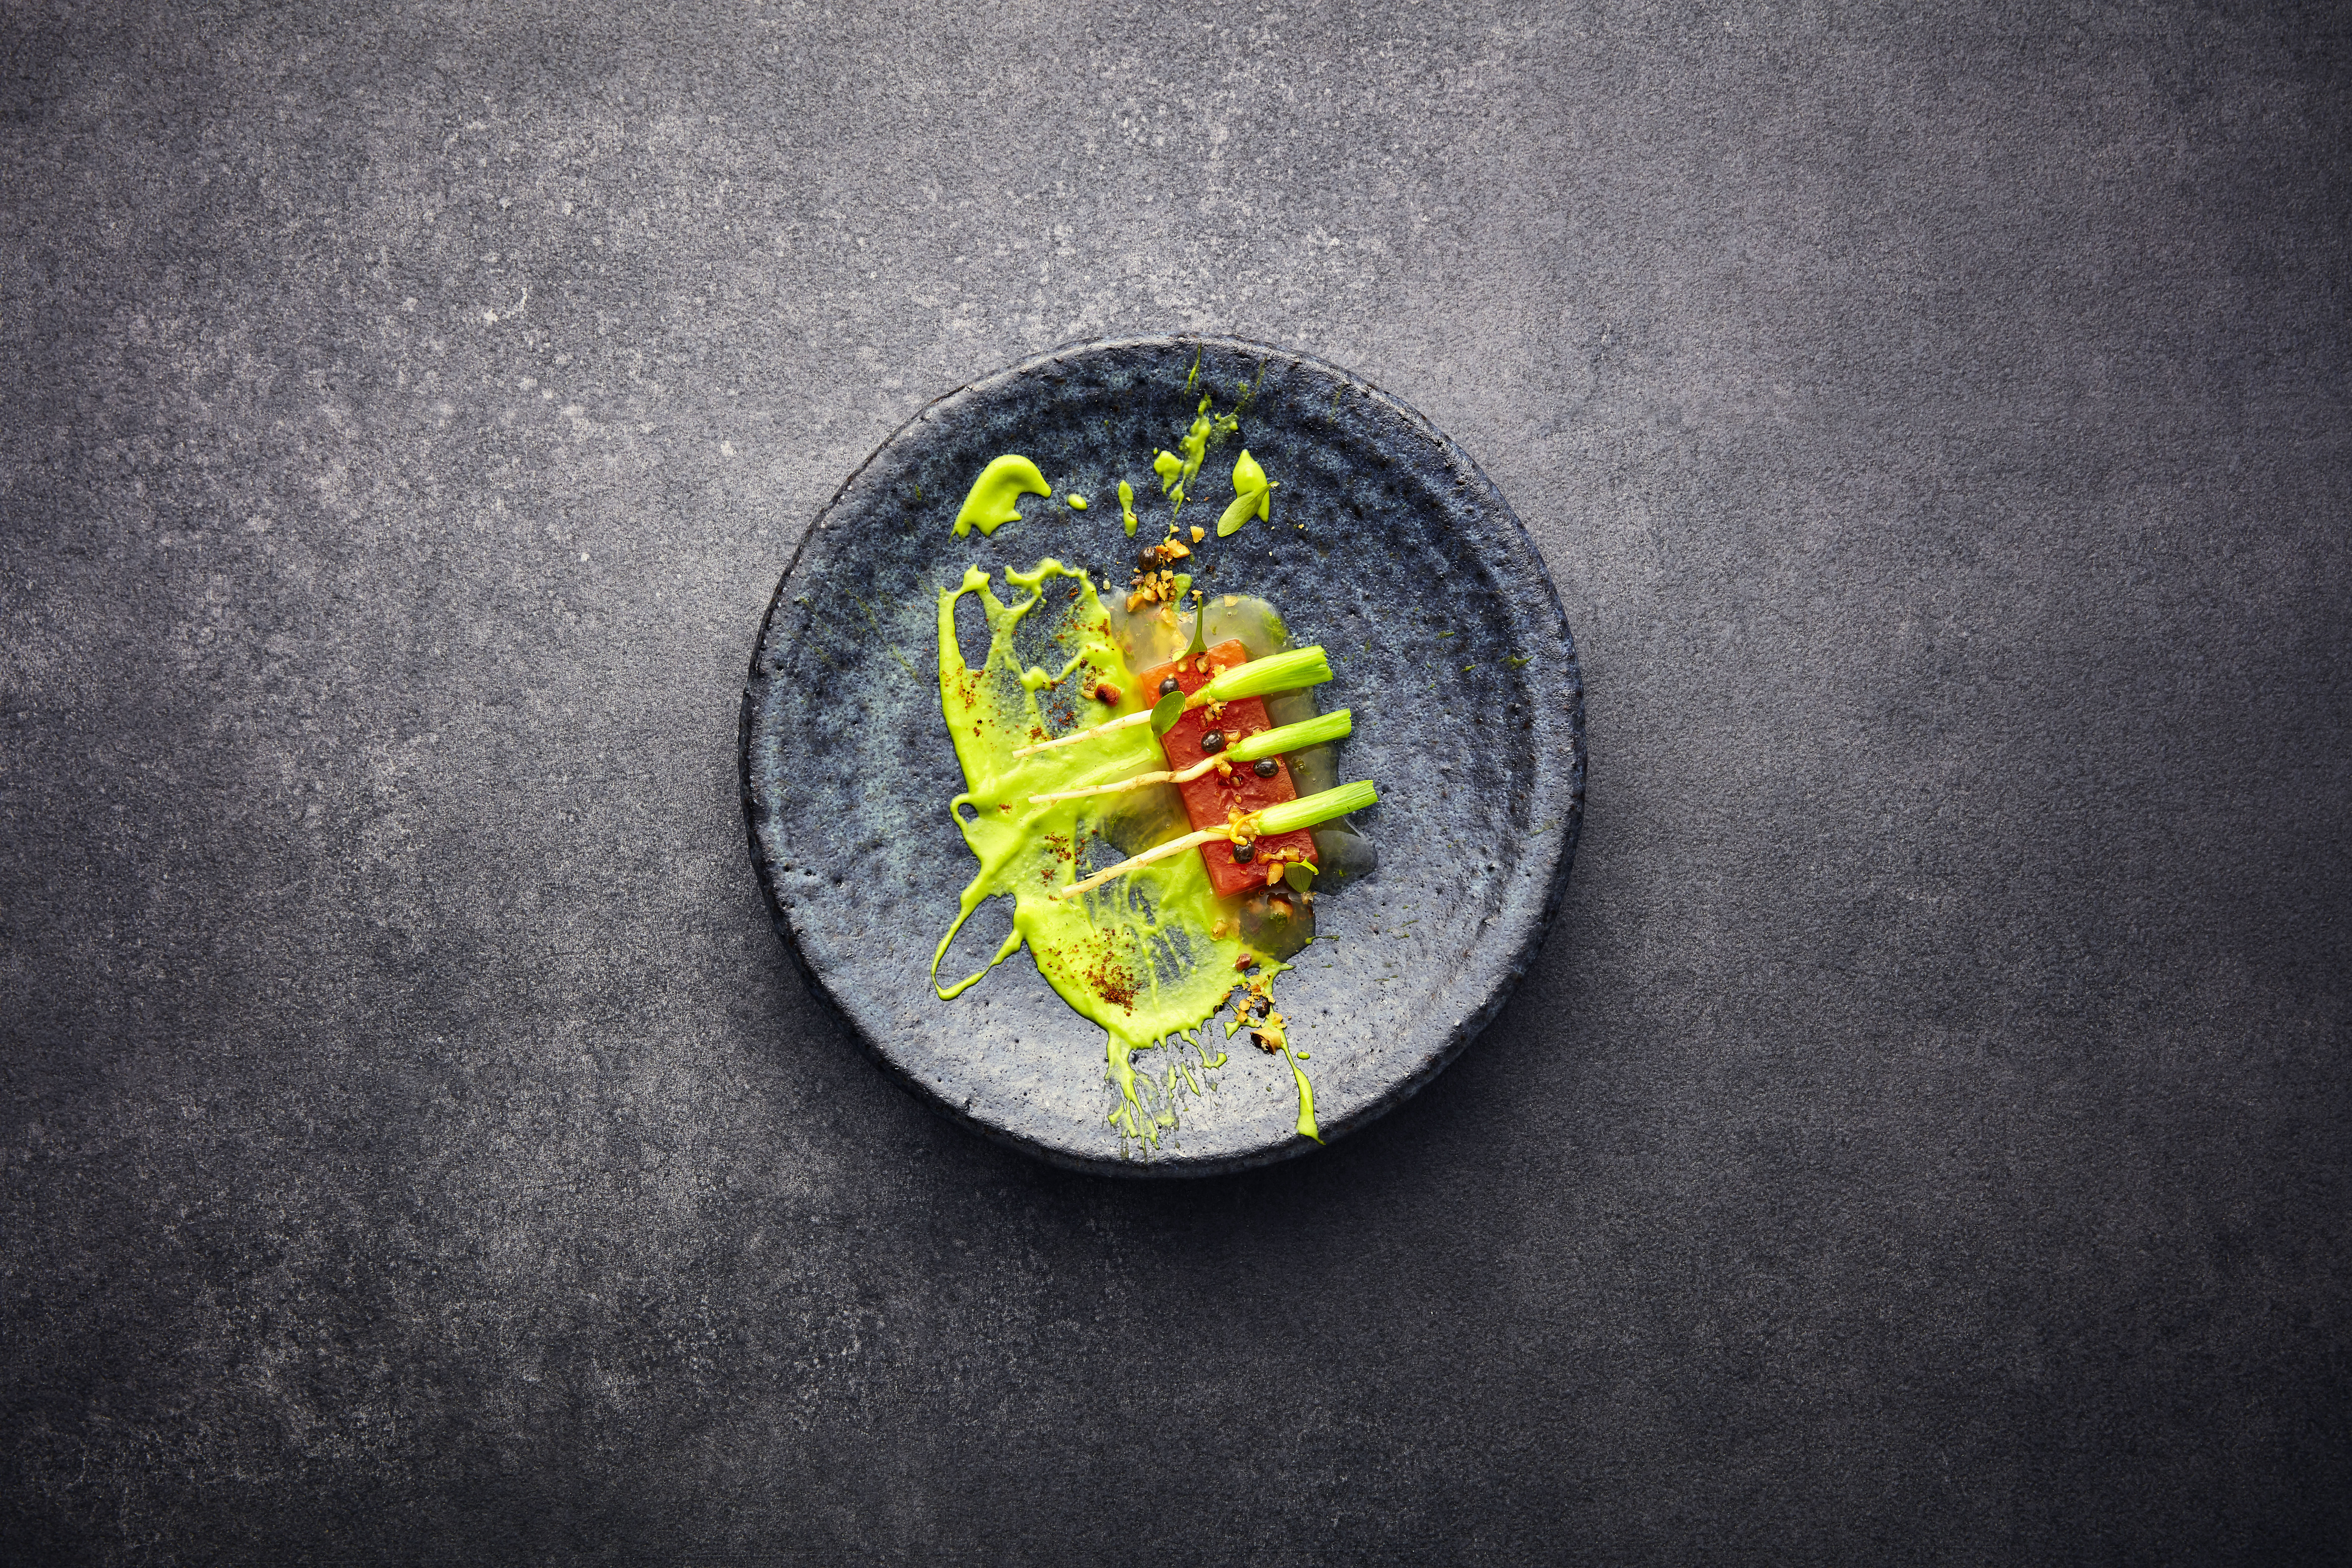 Una propuesta para descubrir el umami es unir sabores diferentes, como en este plato de crema de ejotes y papaya. Foto Prensa Libre: Thorsten Kleine Holthaus/Tre Torri Verlag/DPA